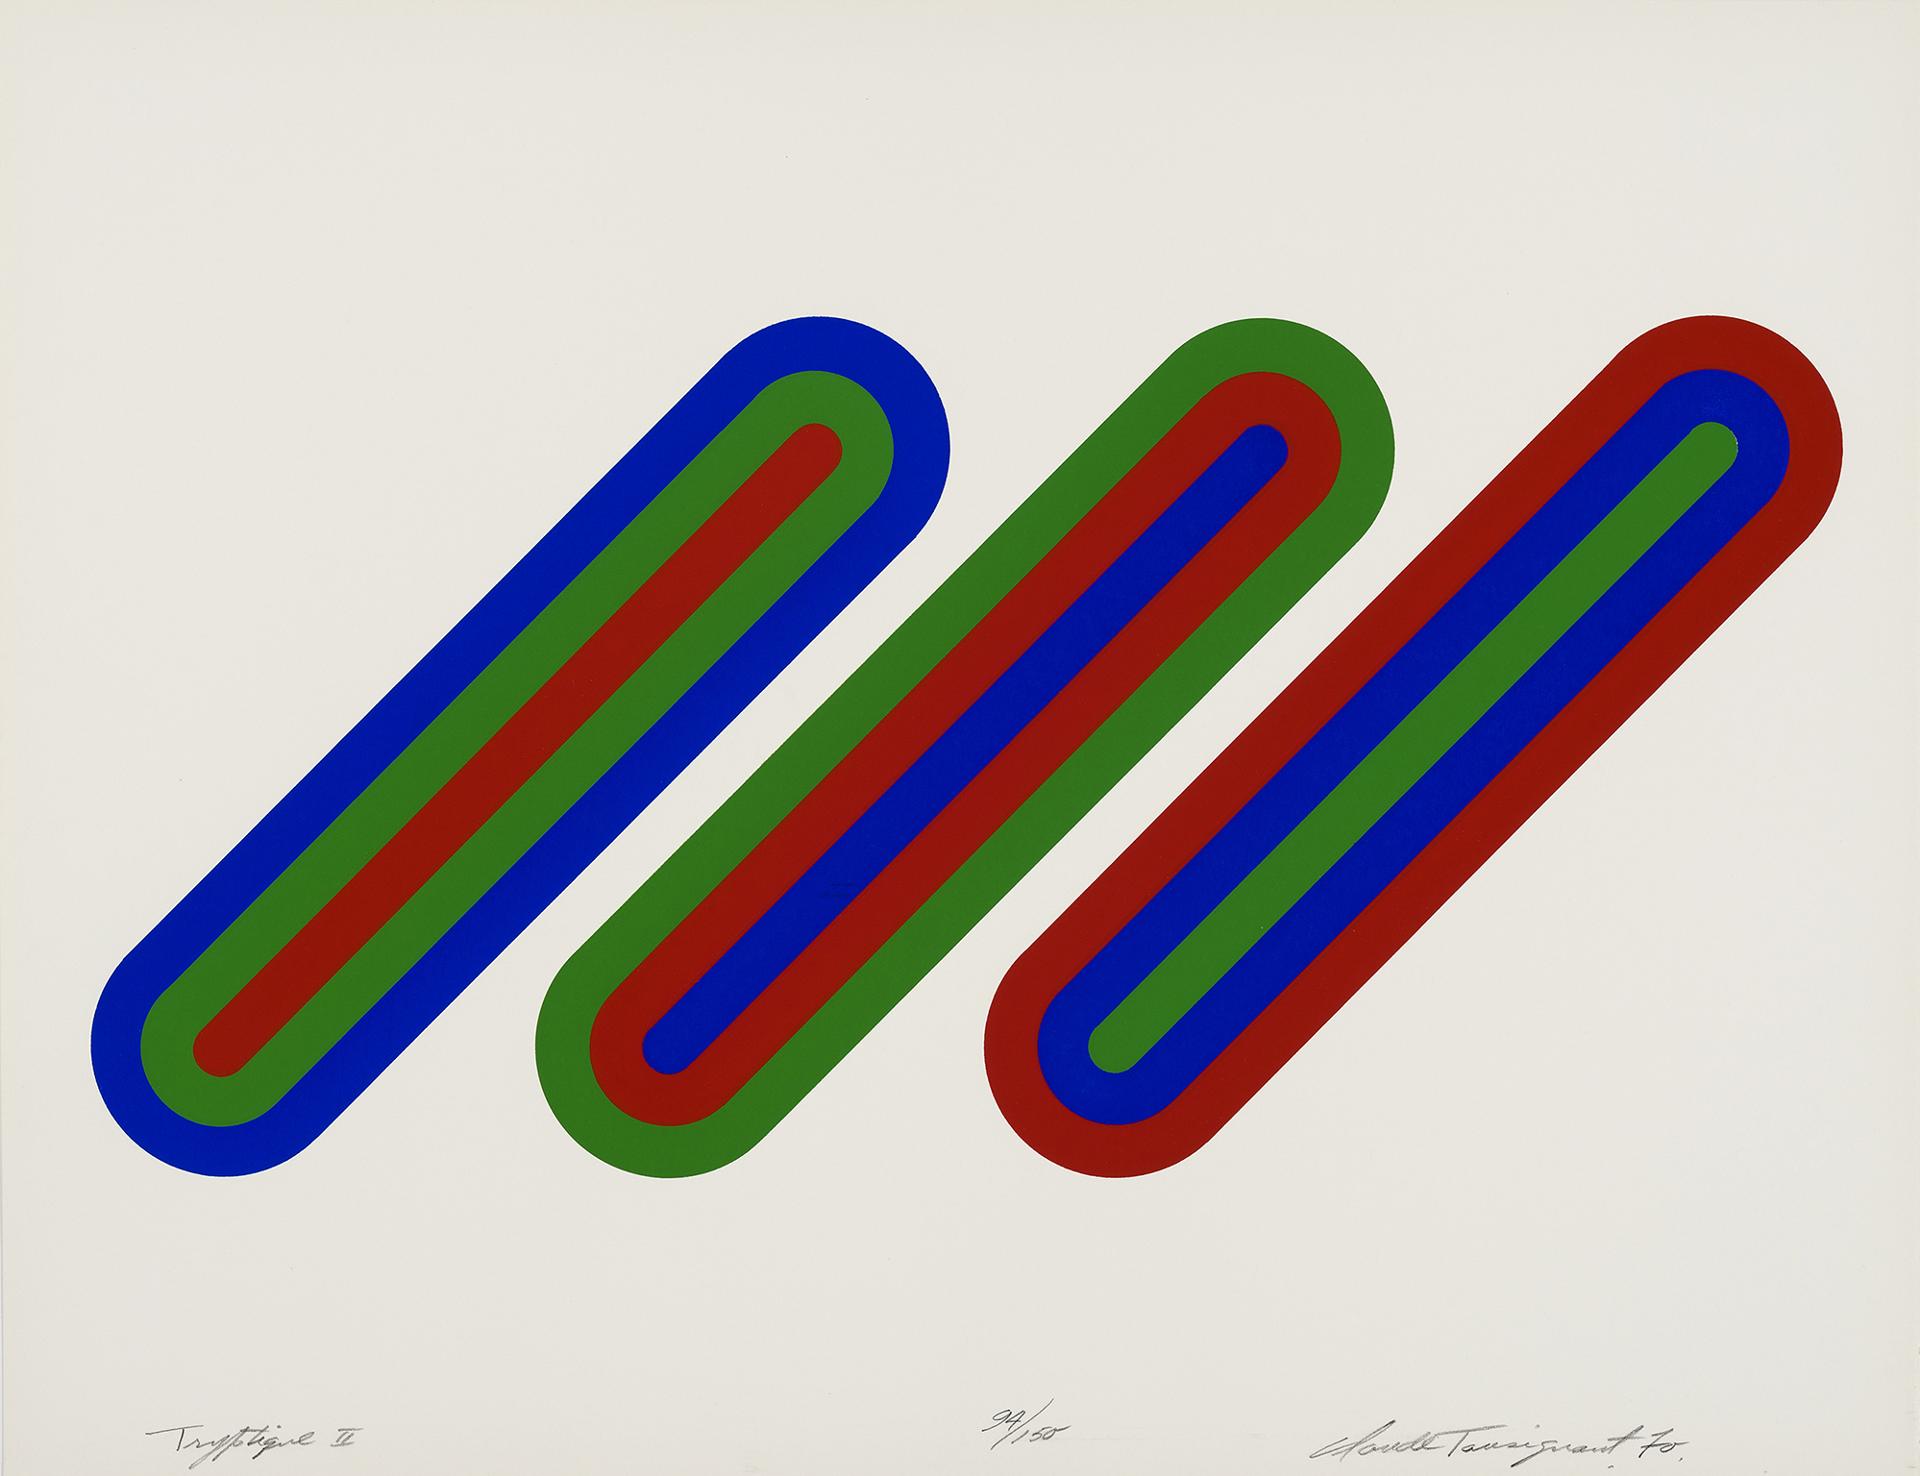 Claude Tousignant (1932) - Tryptique II, 1970